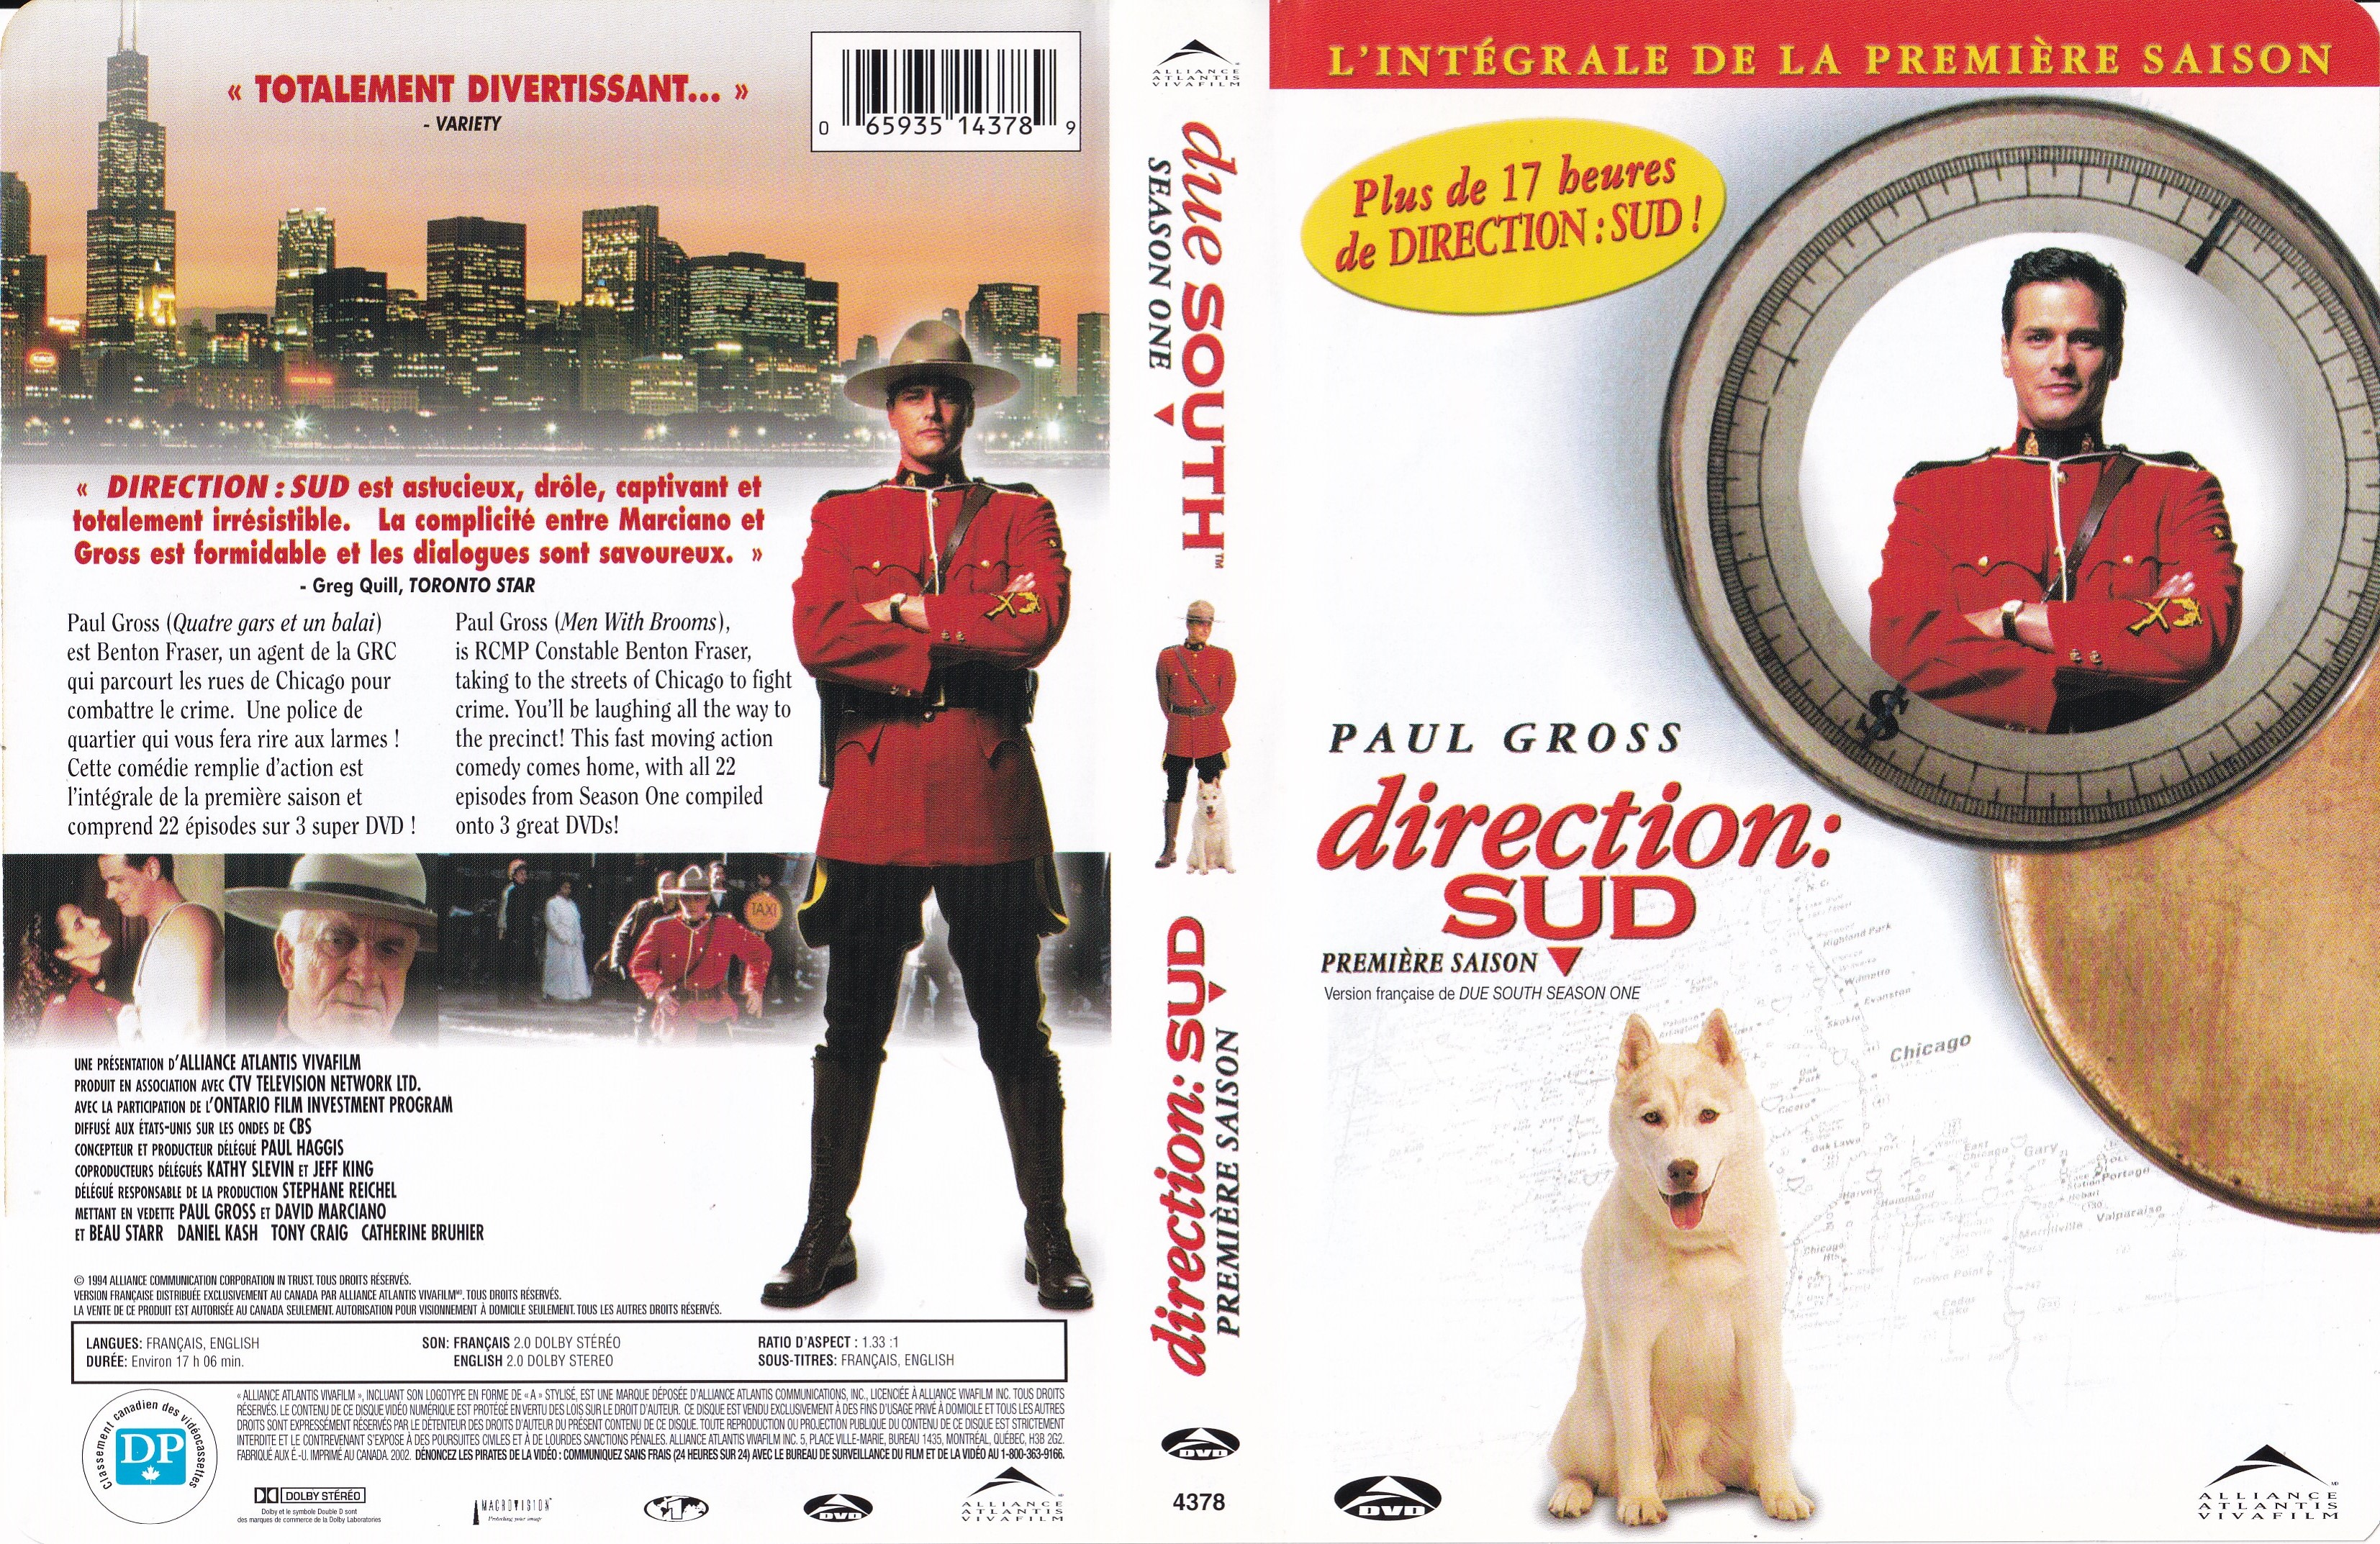 Jaquette DVD Due South - Direction Sud - Un Tandem de Choc Saison 1 (Canadienne)